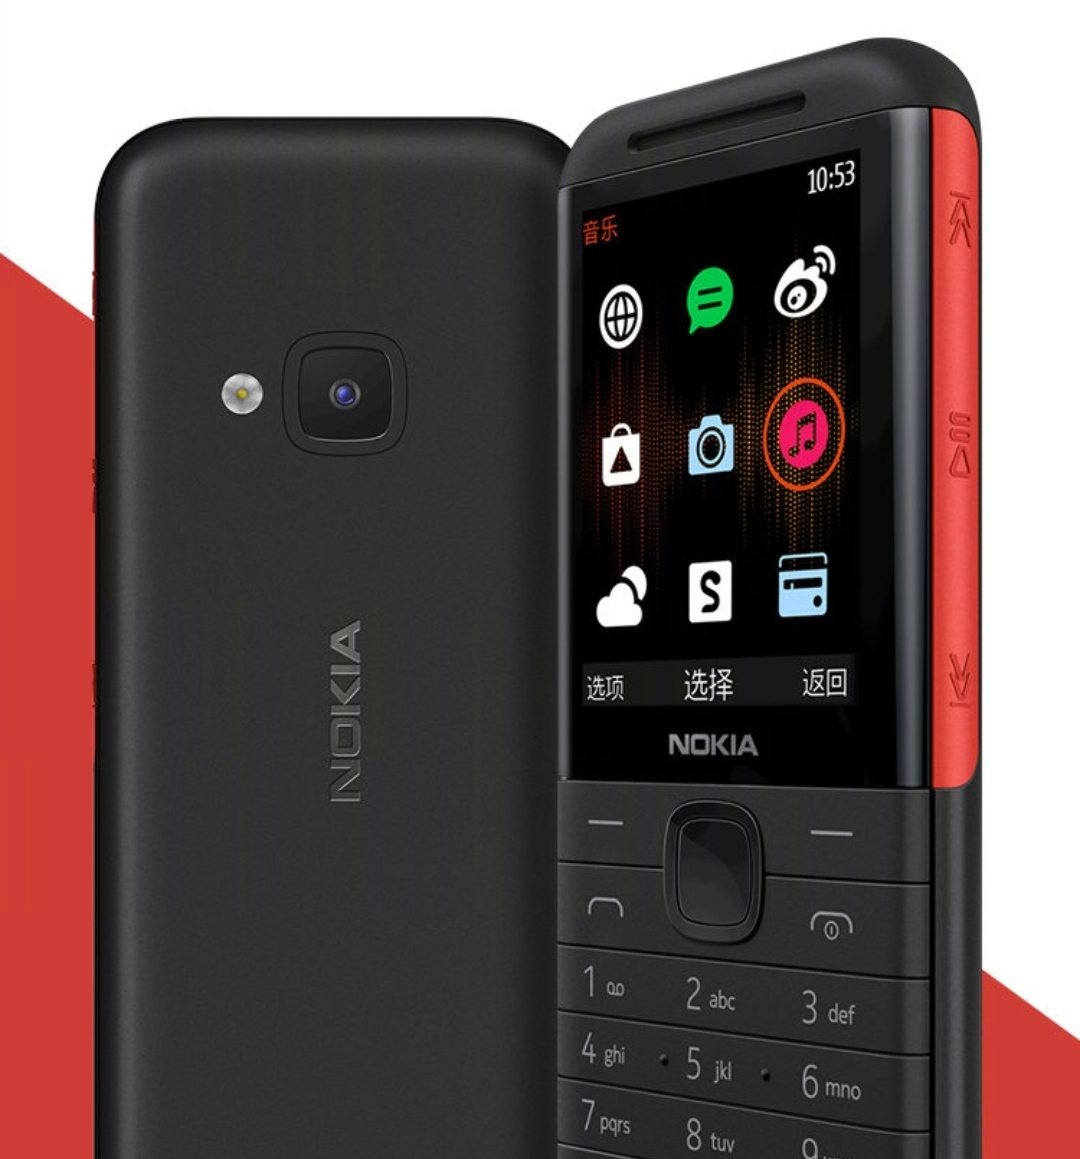 Nokia 5310 (2020) - 2.4